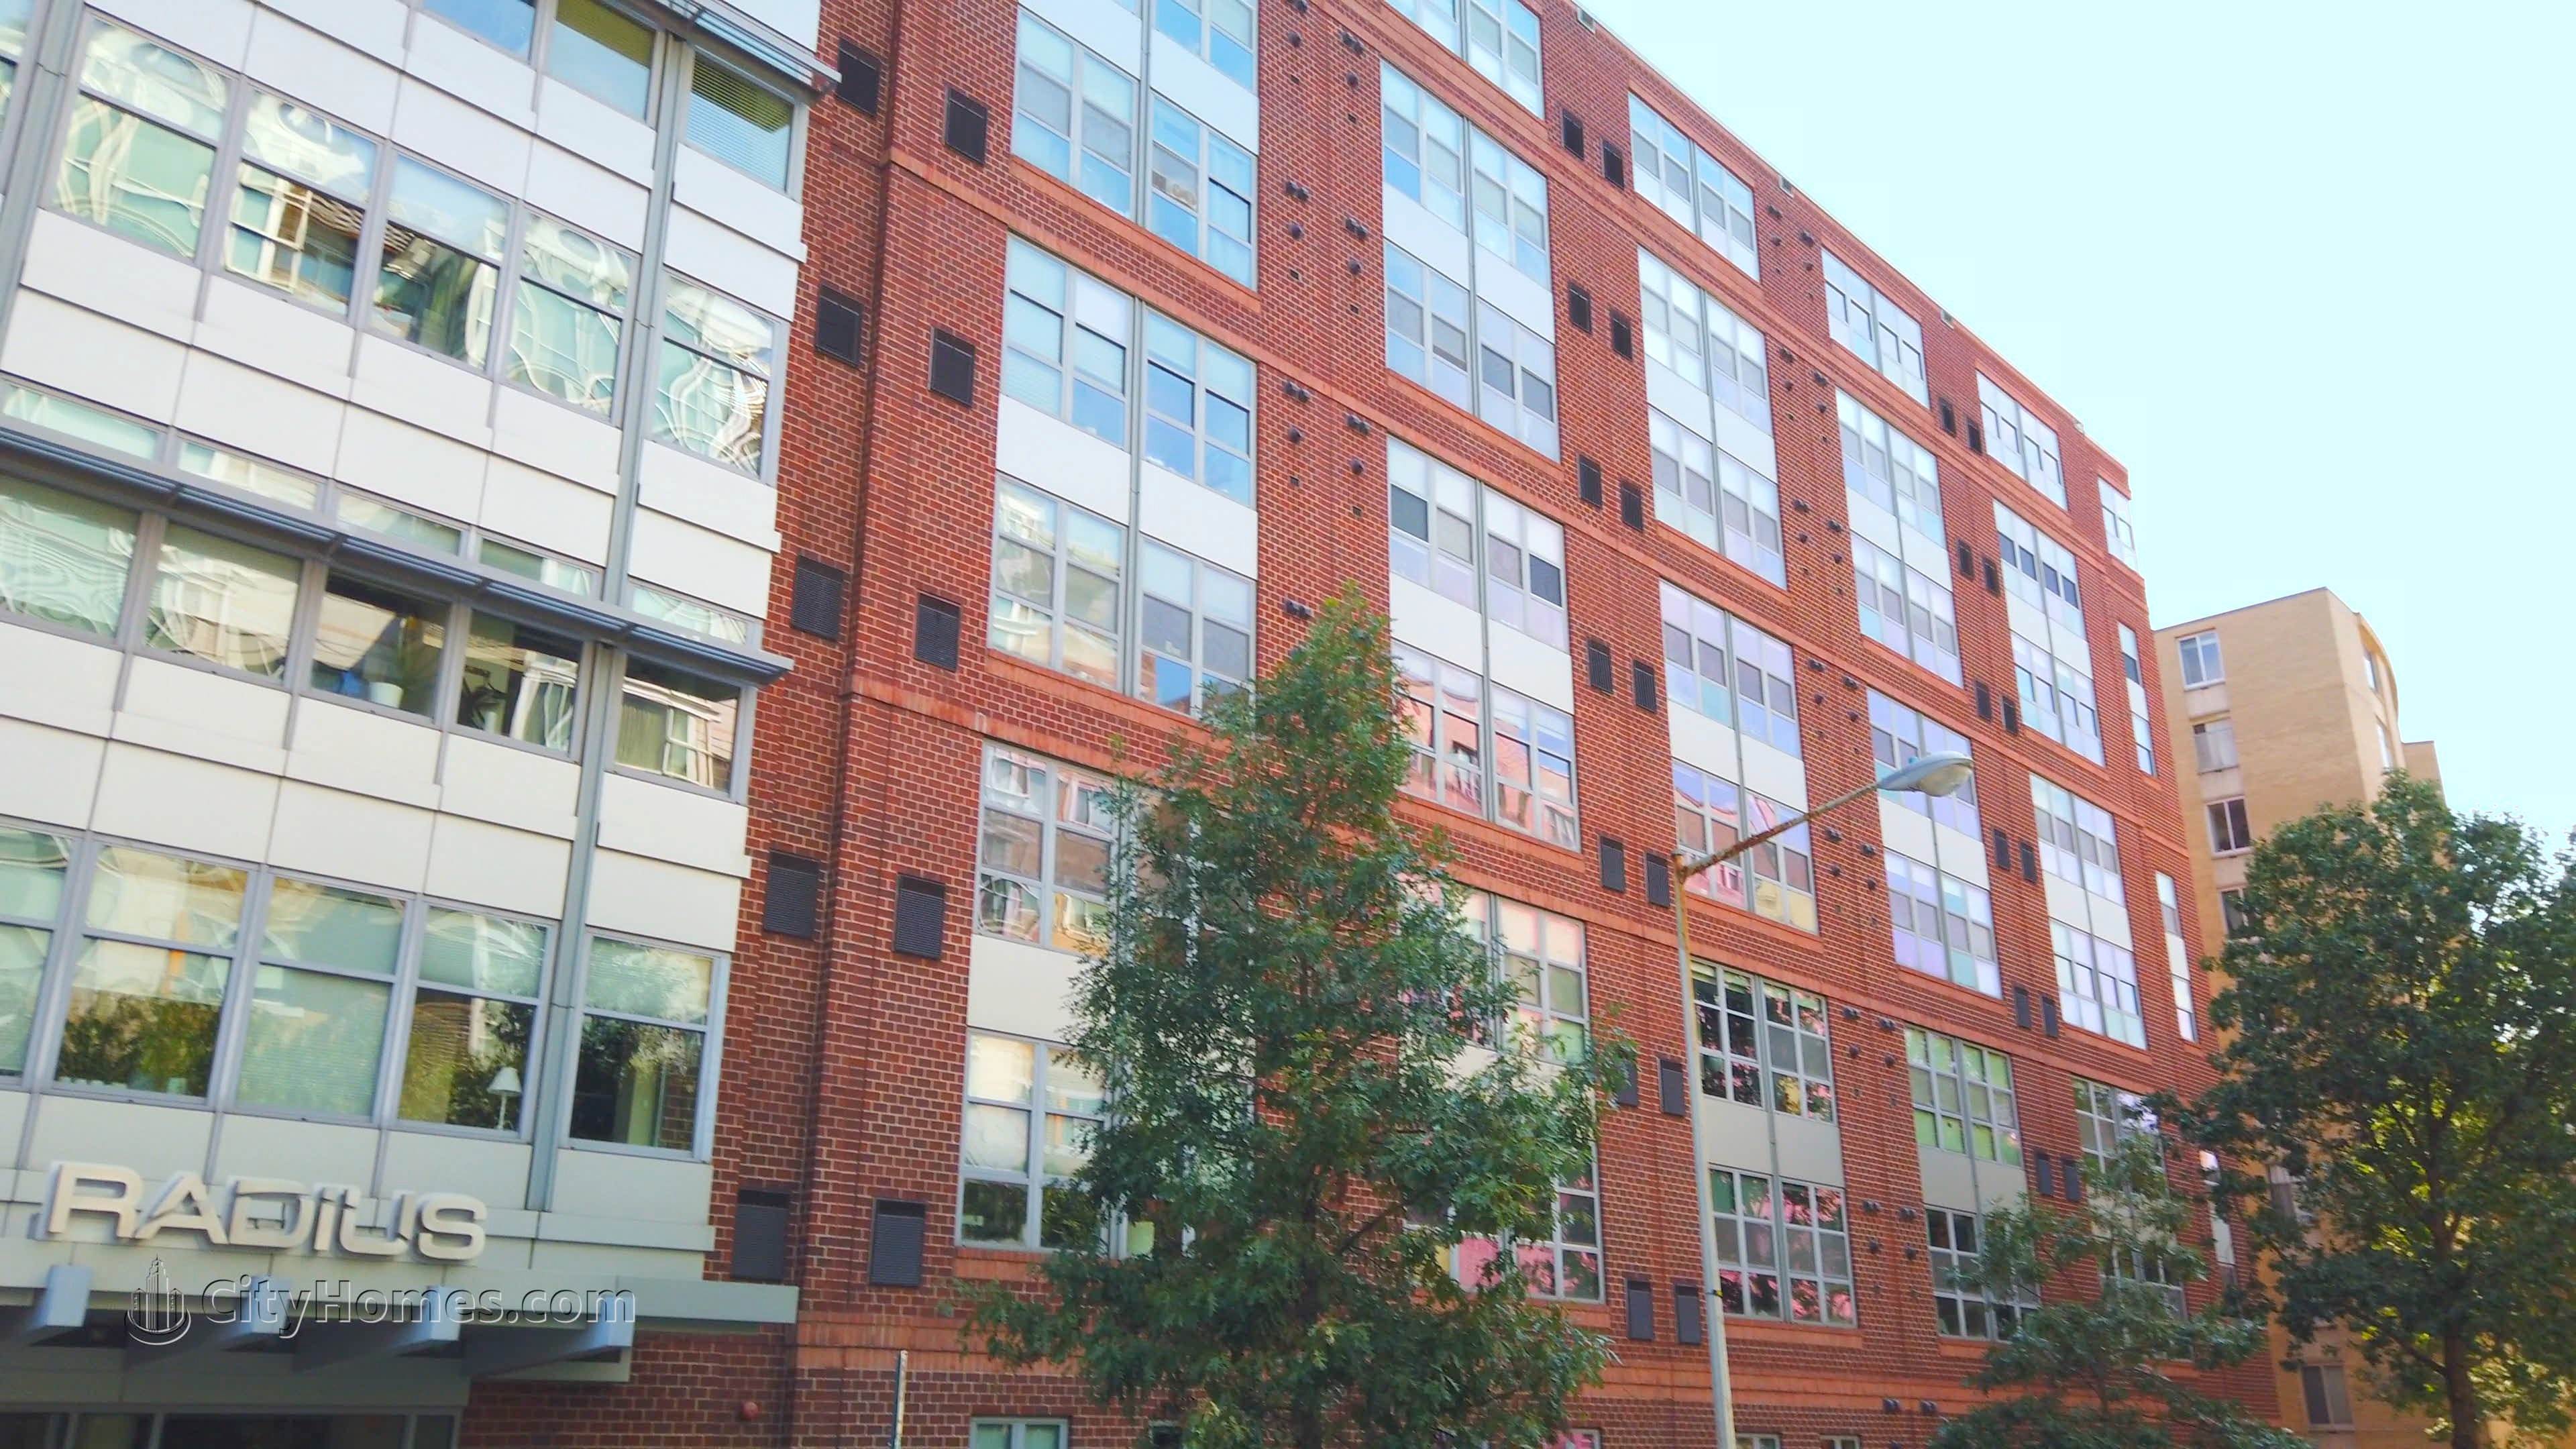 2. Radius Condos gebouw op 1300 N St NW, Logan Circle, Washington, DC 20005